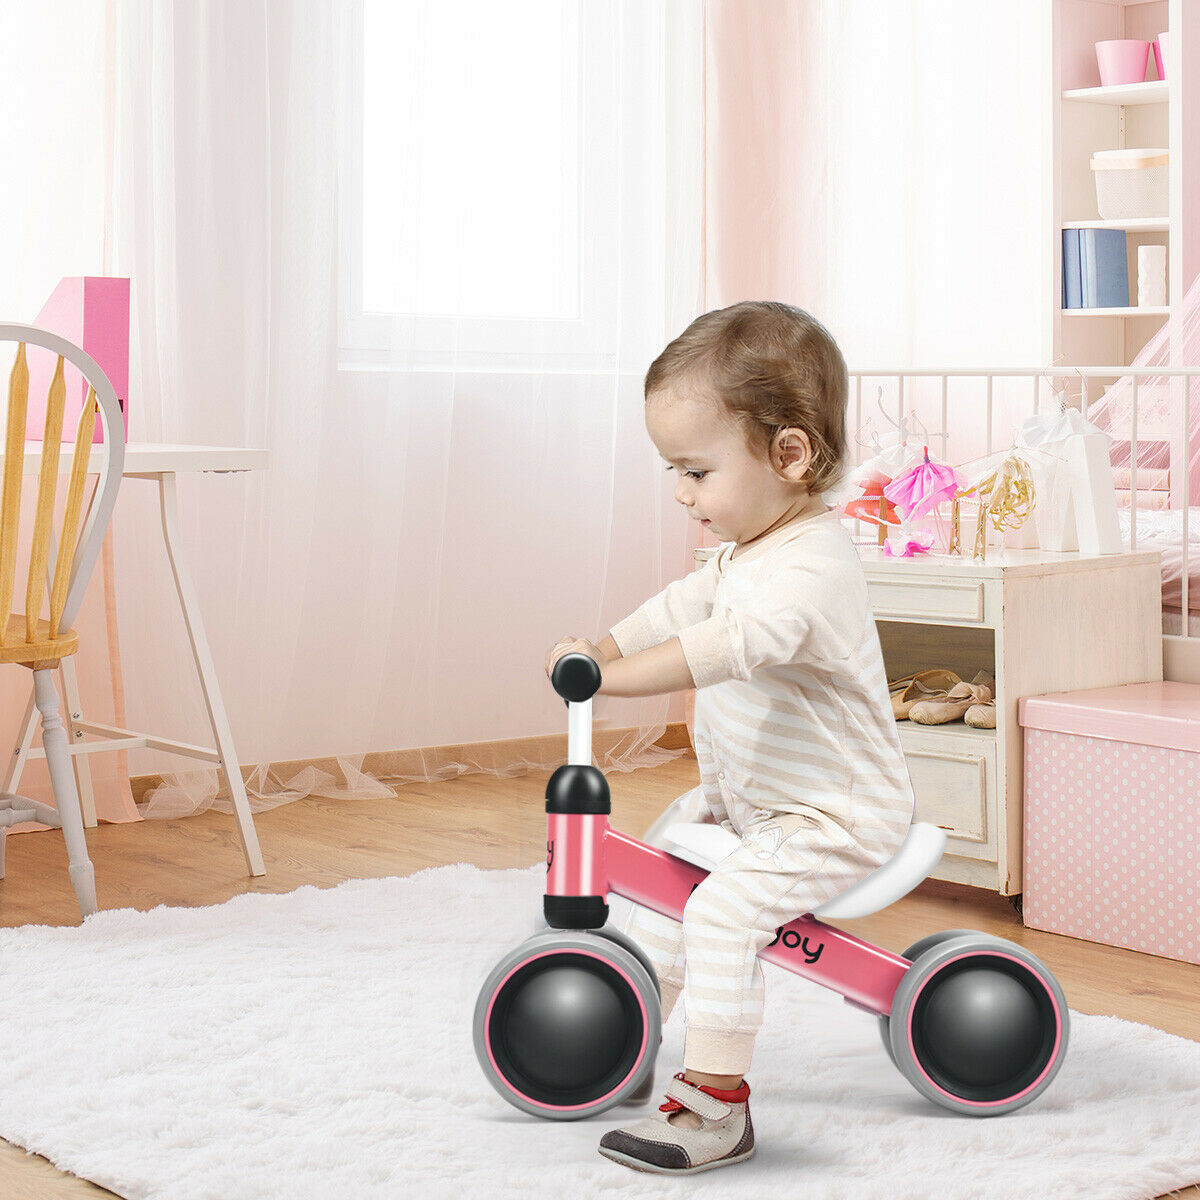 Babyjoy 4 Wheels Baby Balance Bike Children Walker No-Pedal Toddler Toys Rides Pink - image 3 of 10